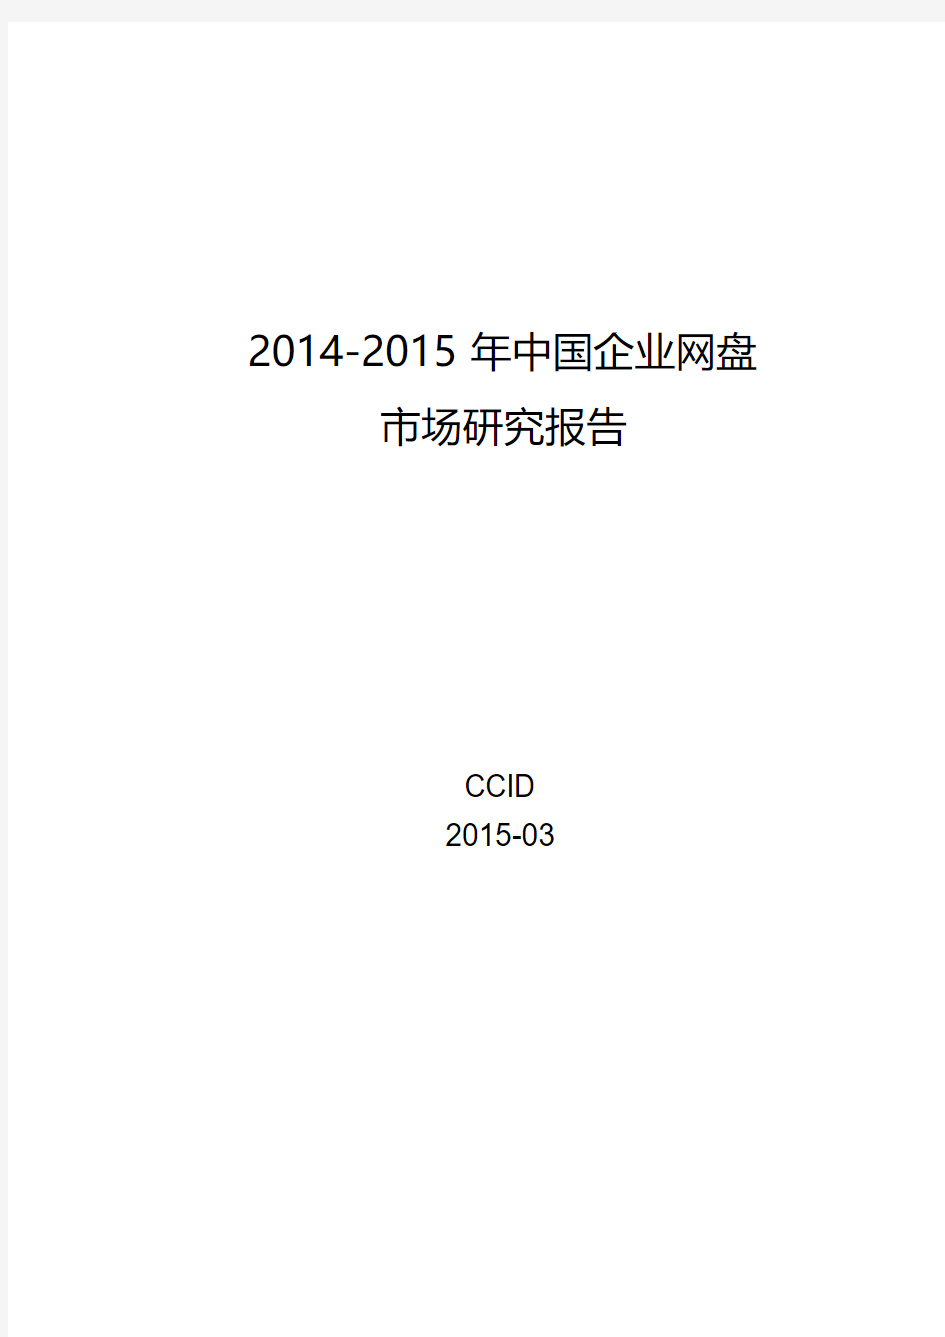 2014-2015年中国企业网盘市场研究报告-赛迪出品